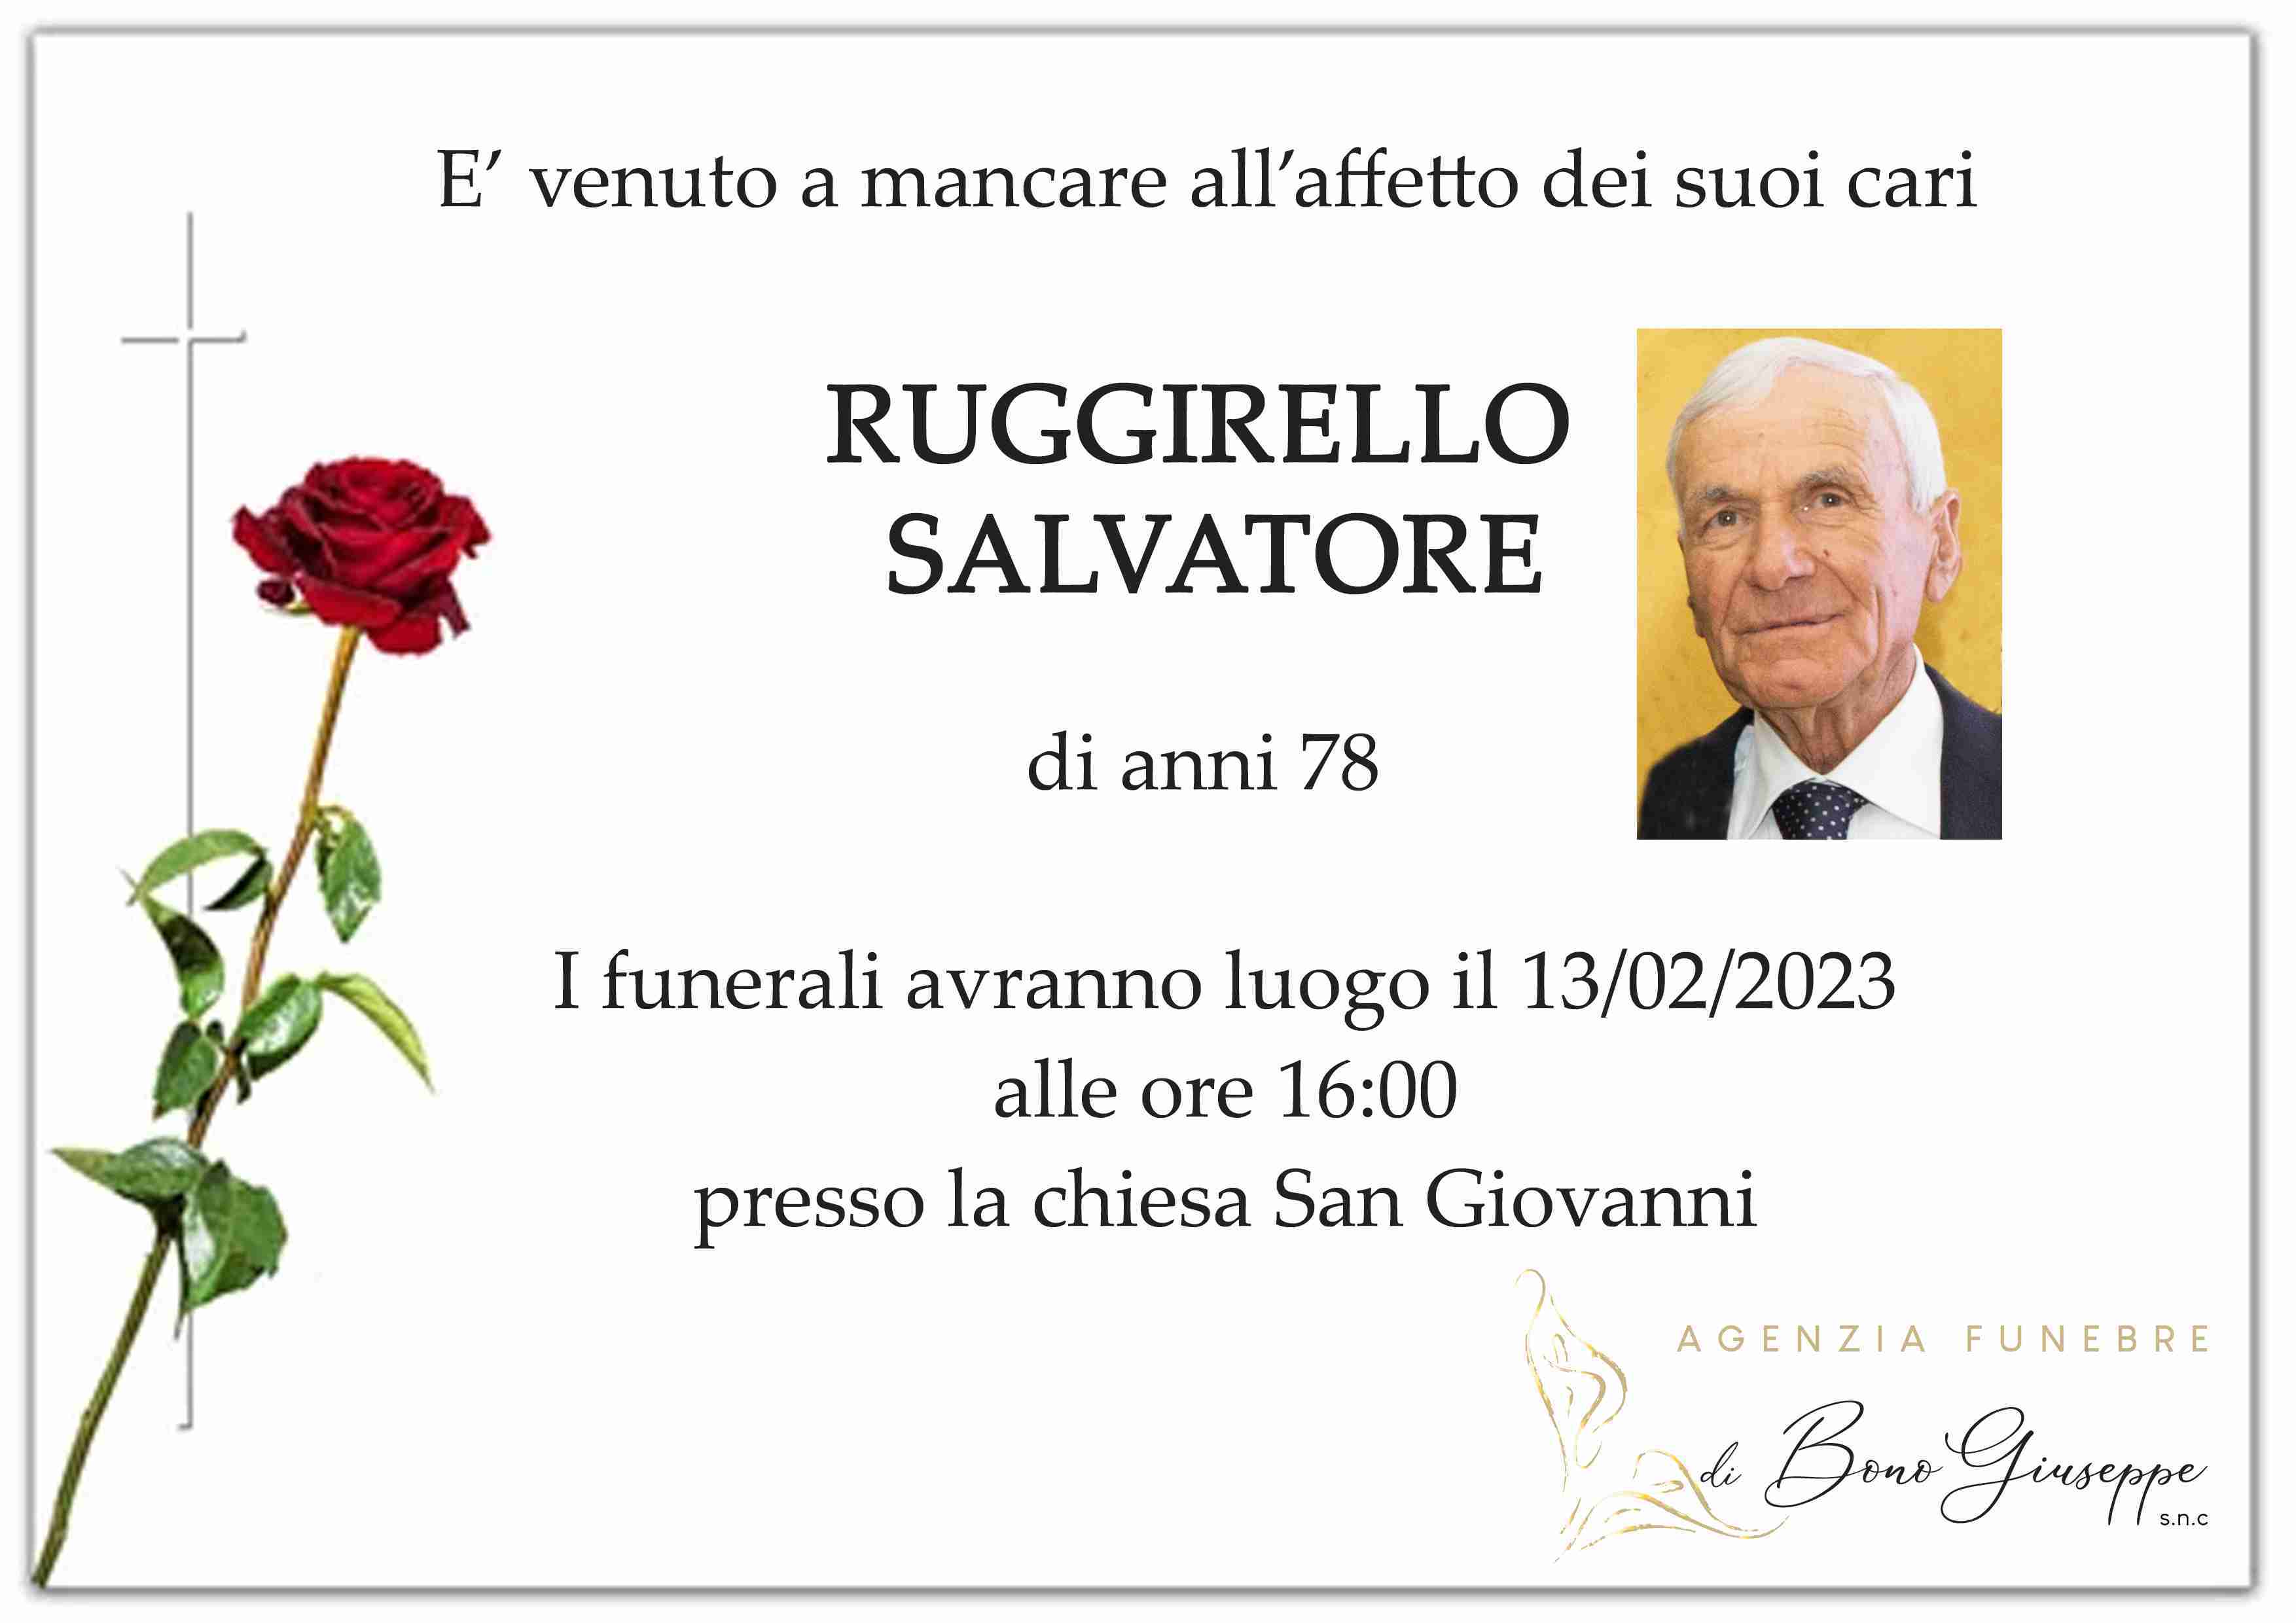 Salvatore Ruggirello